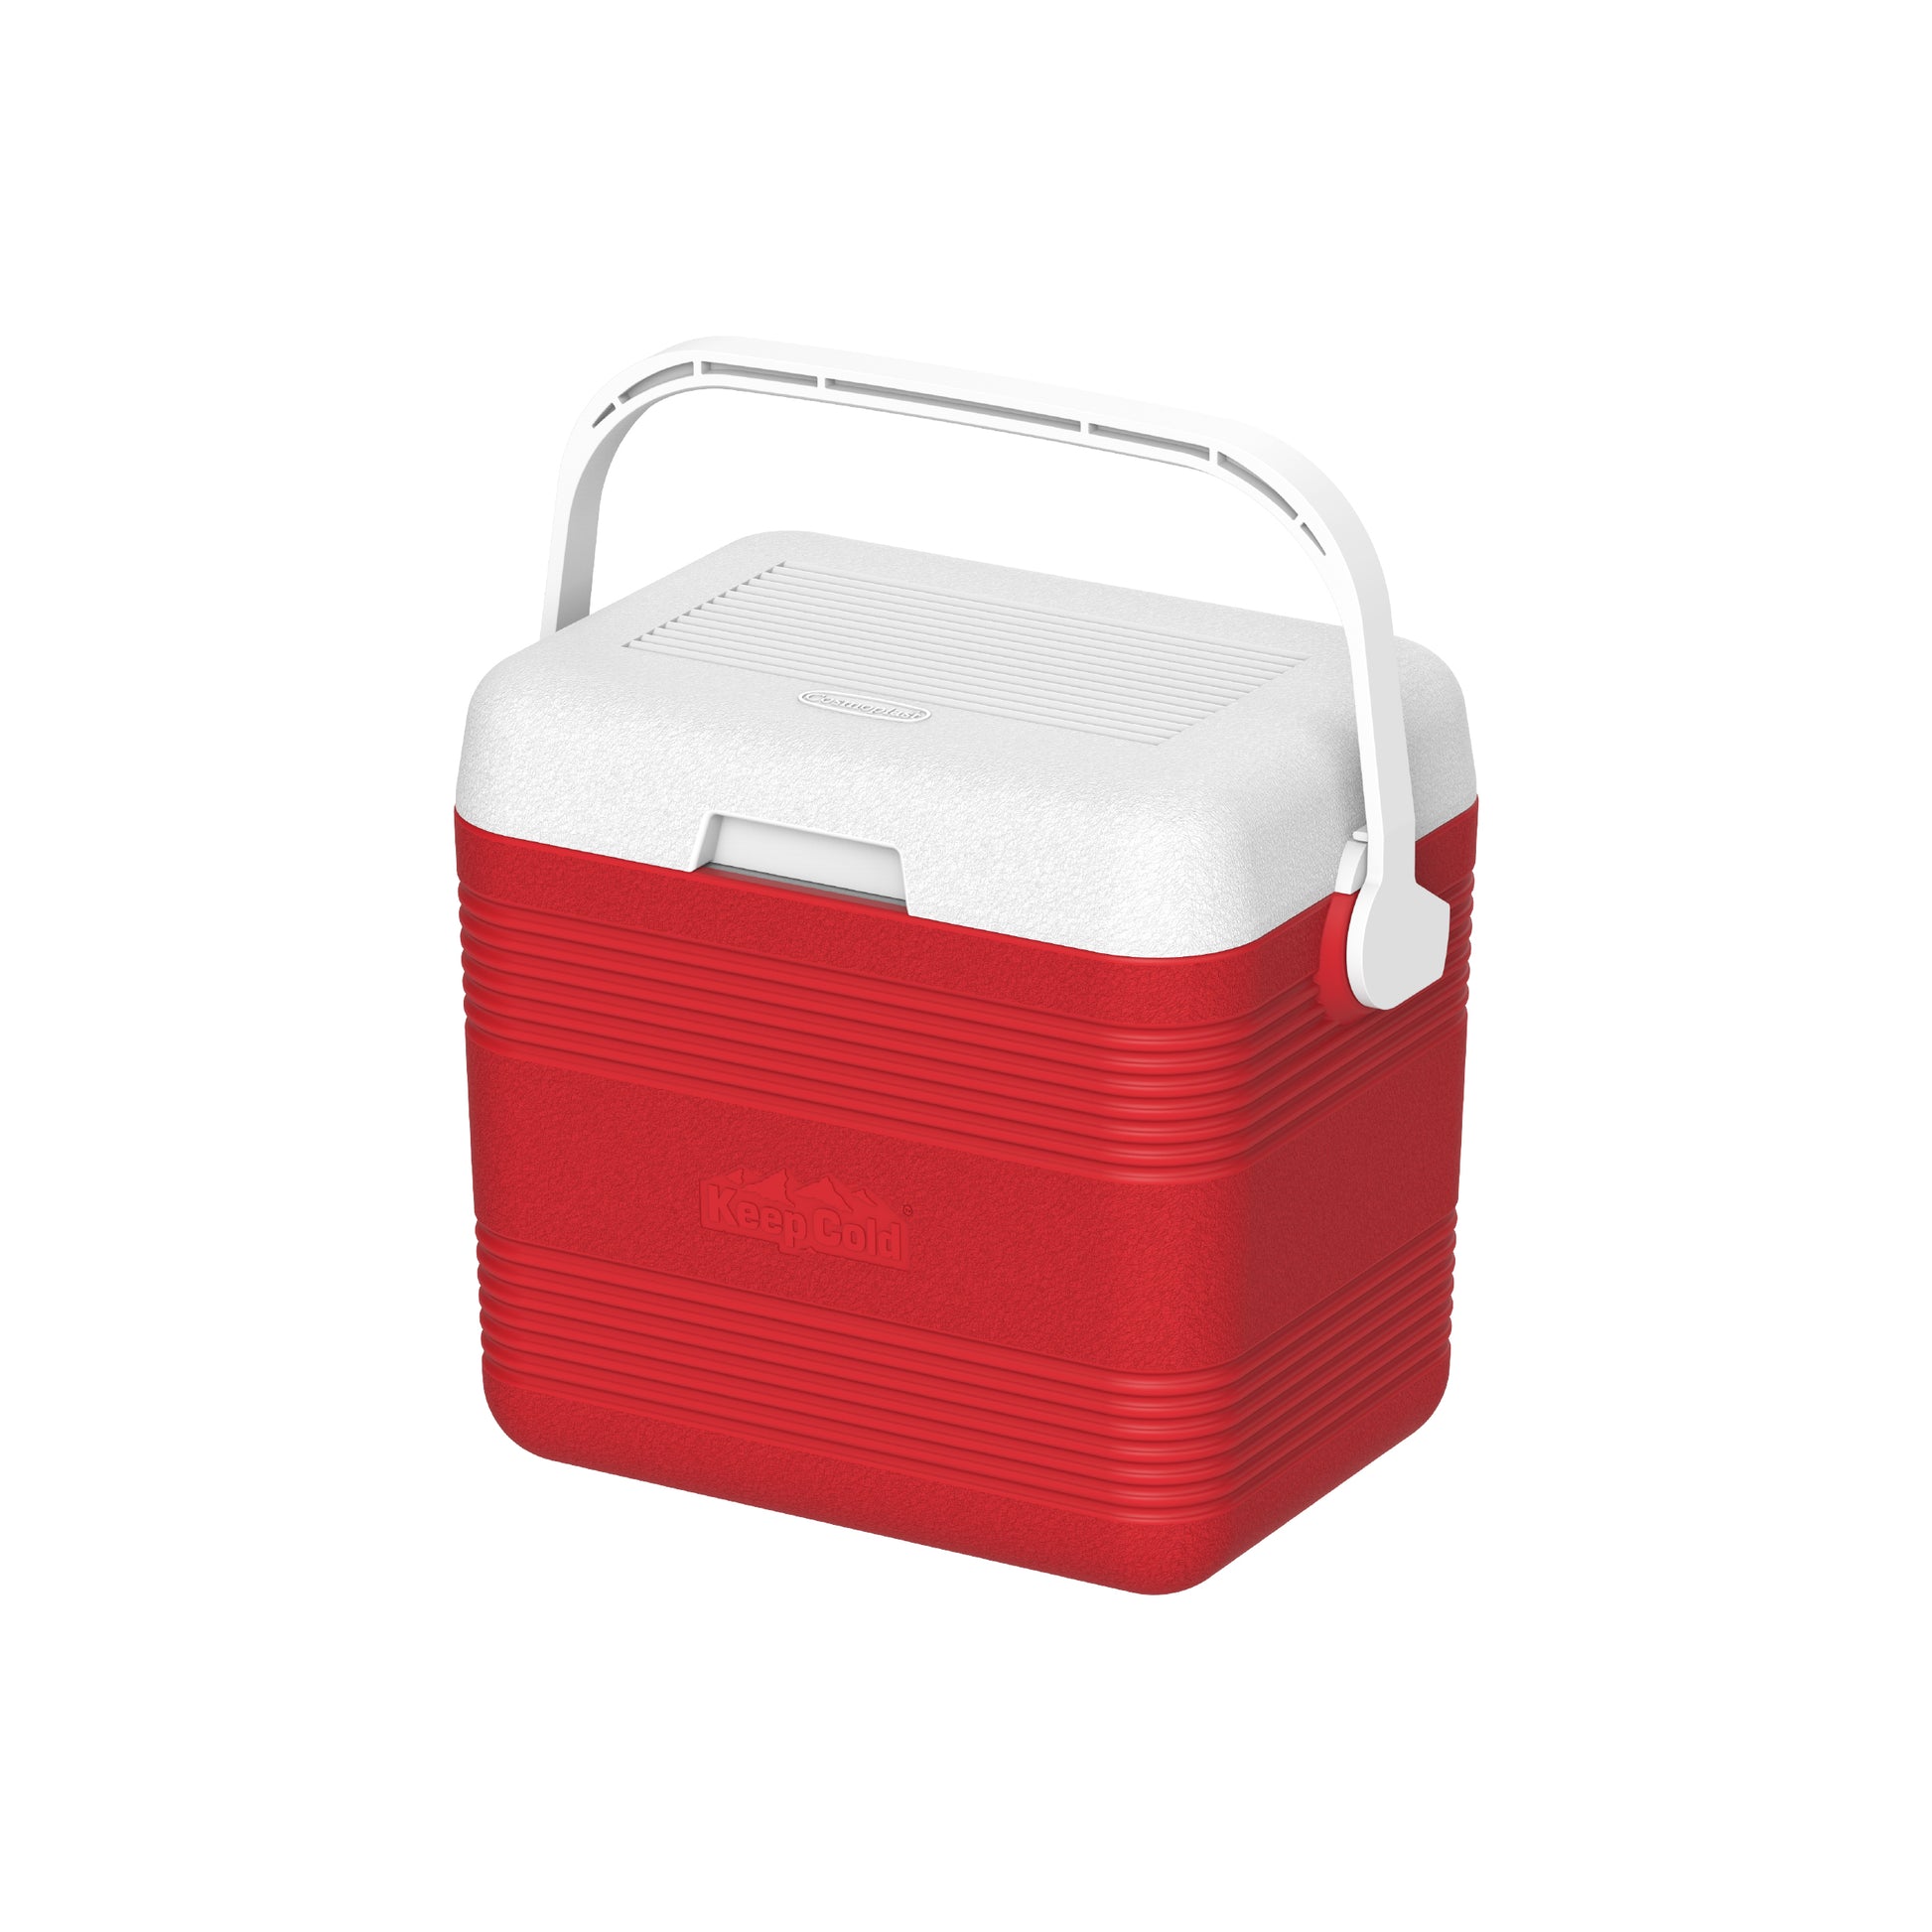 Kasanova - Fruit Ice Box è il contenitore termico per